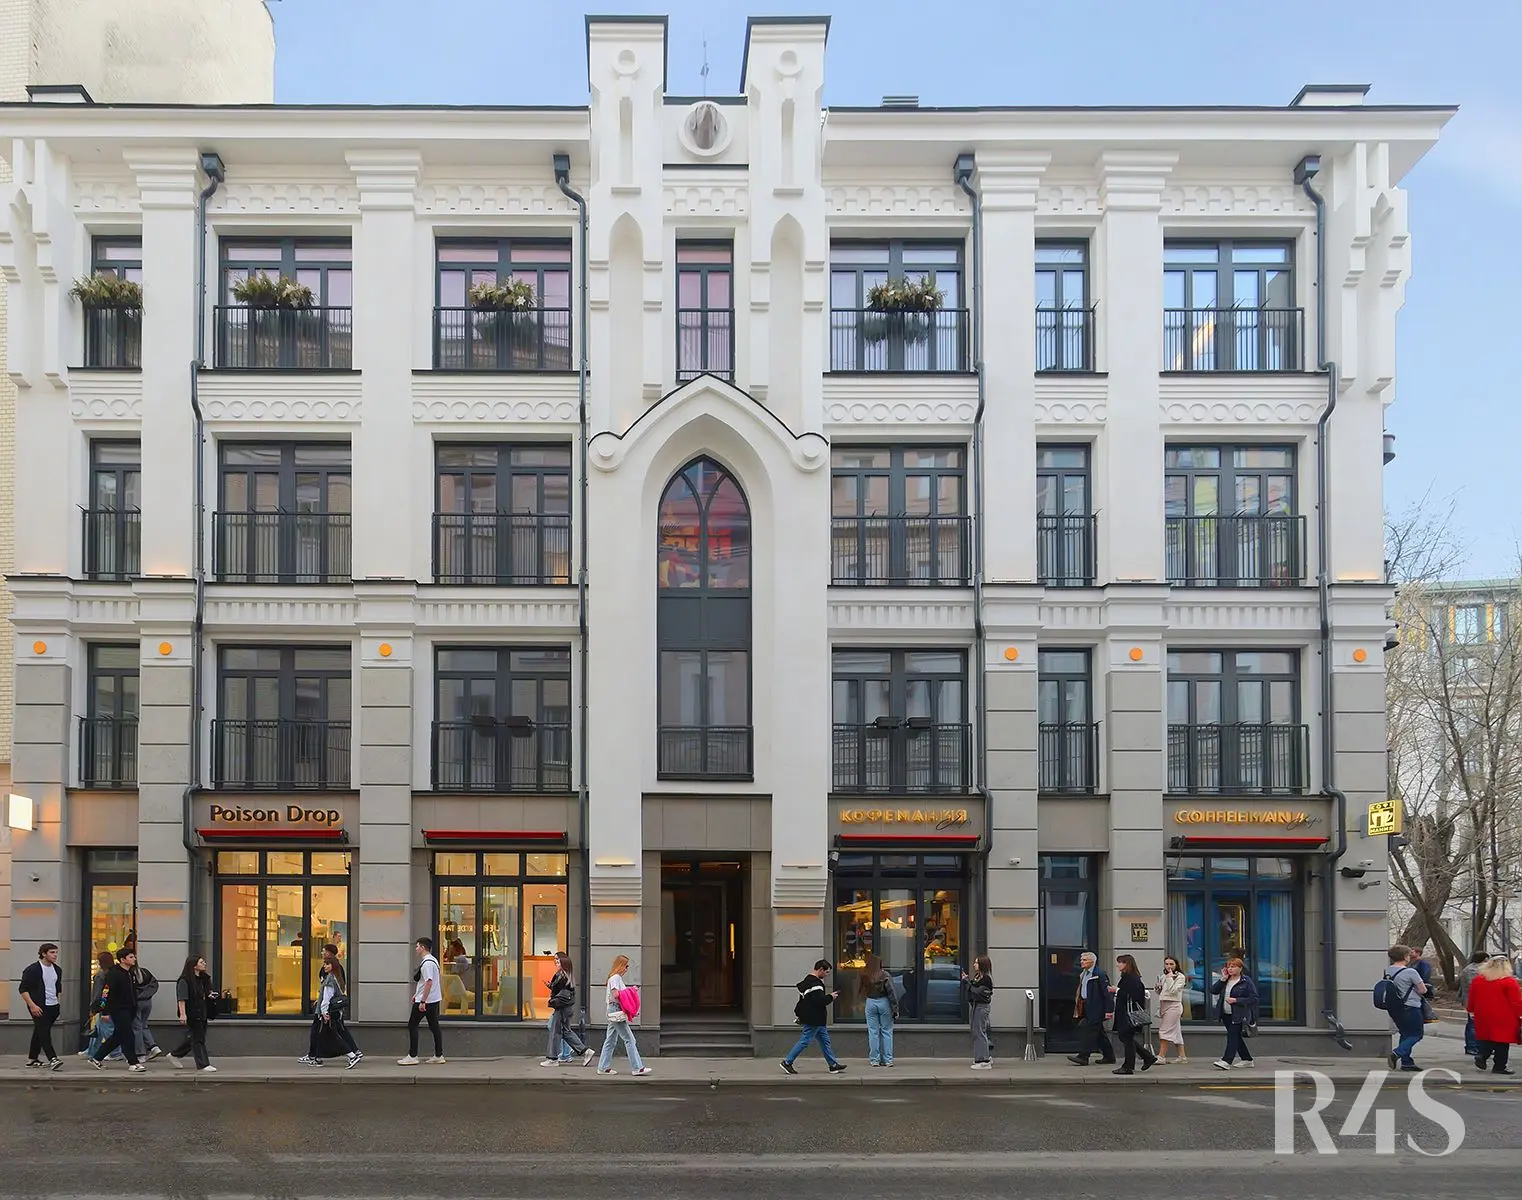 Продажа готового арендного бизнеса площадью 281.3 м2 в Москве: Спиридоньевский переулок, 17 R4S | Realty4Sale